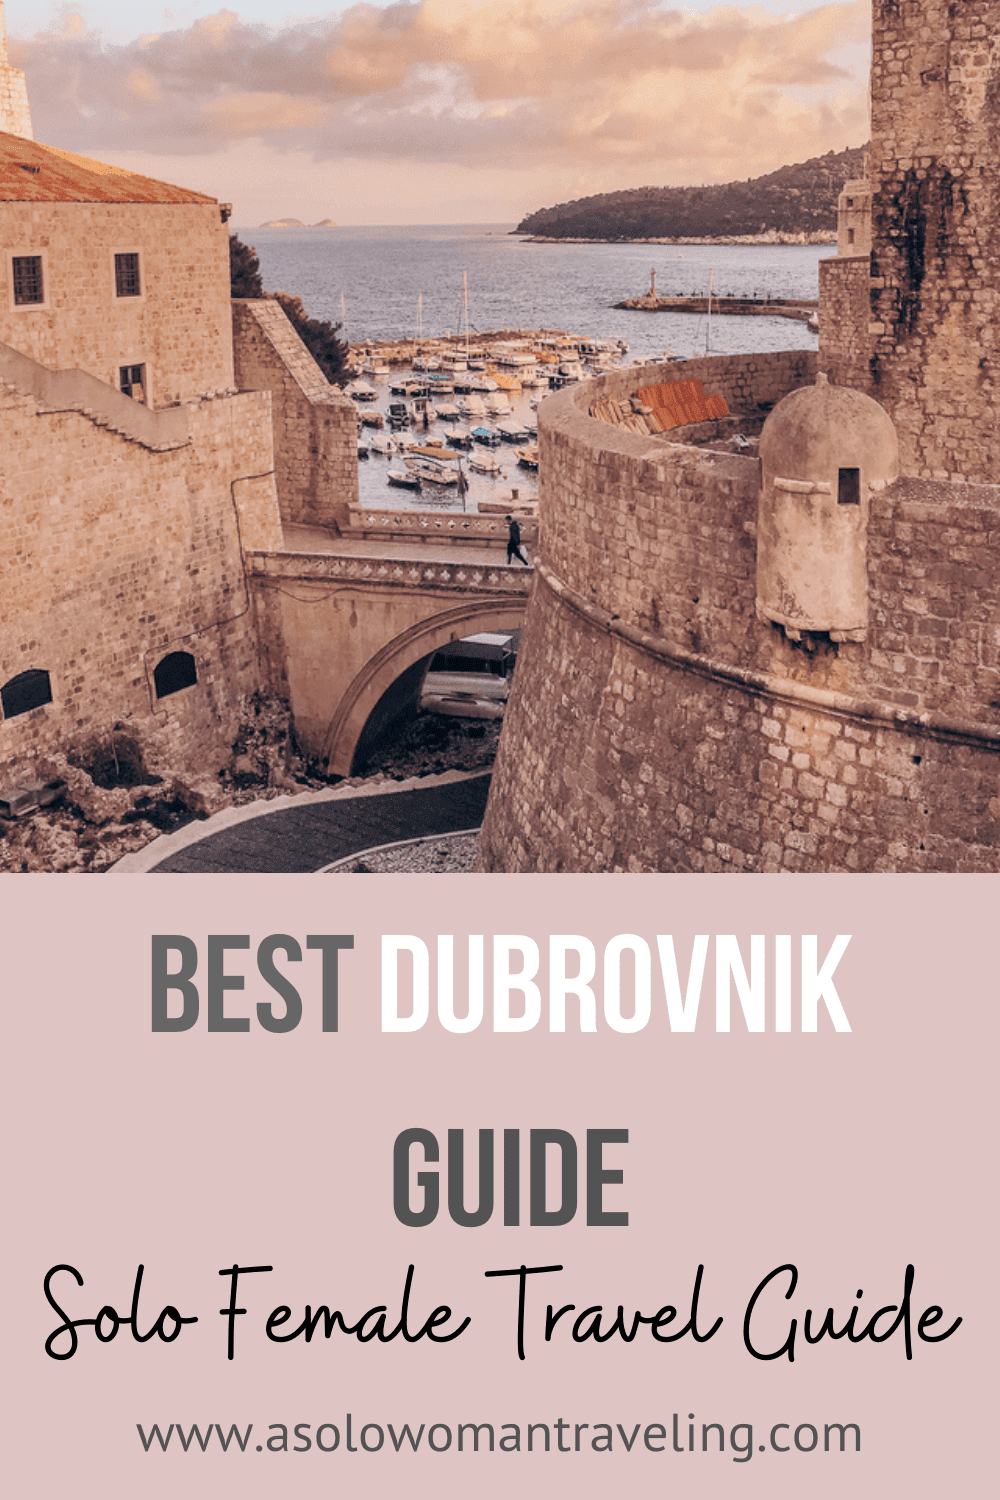 Best Dubrovnik Guide